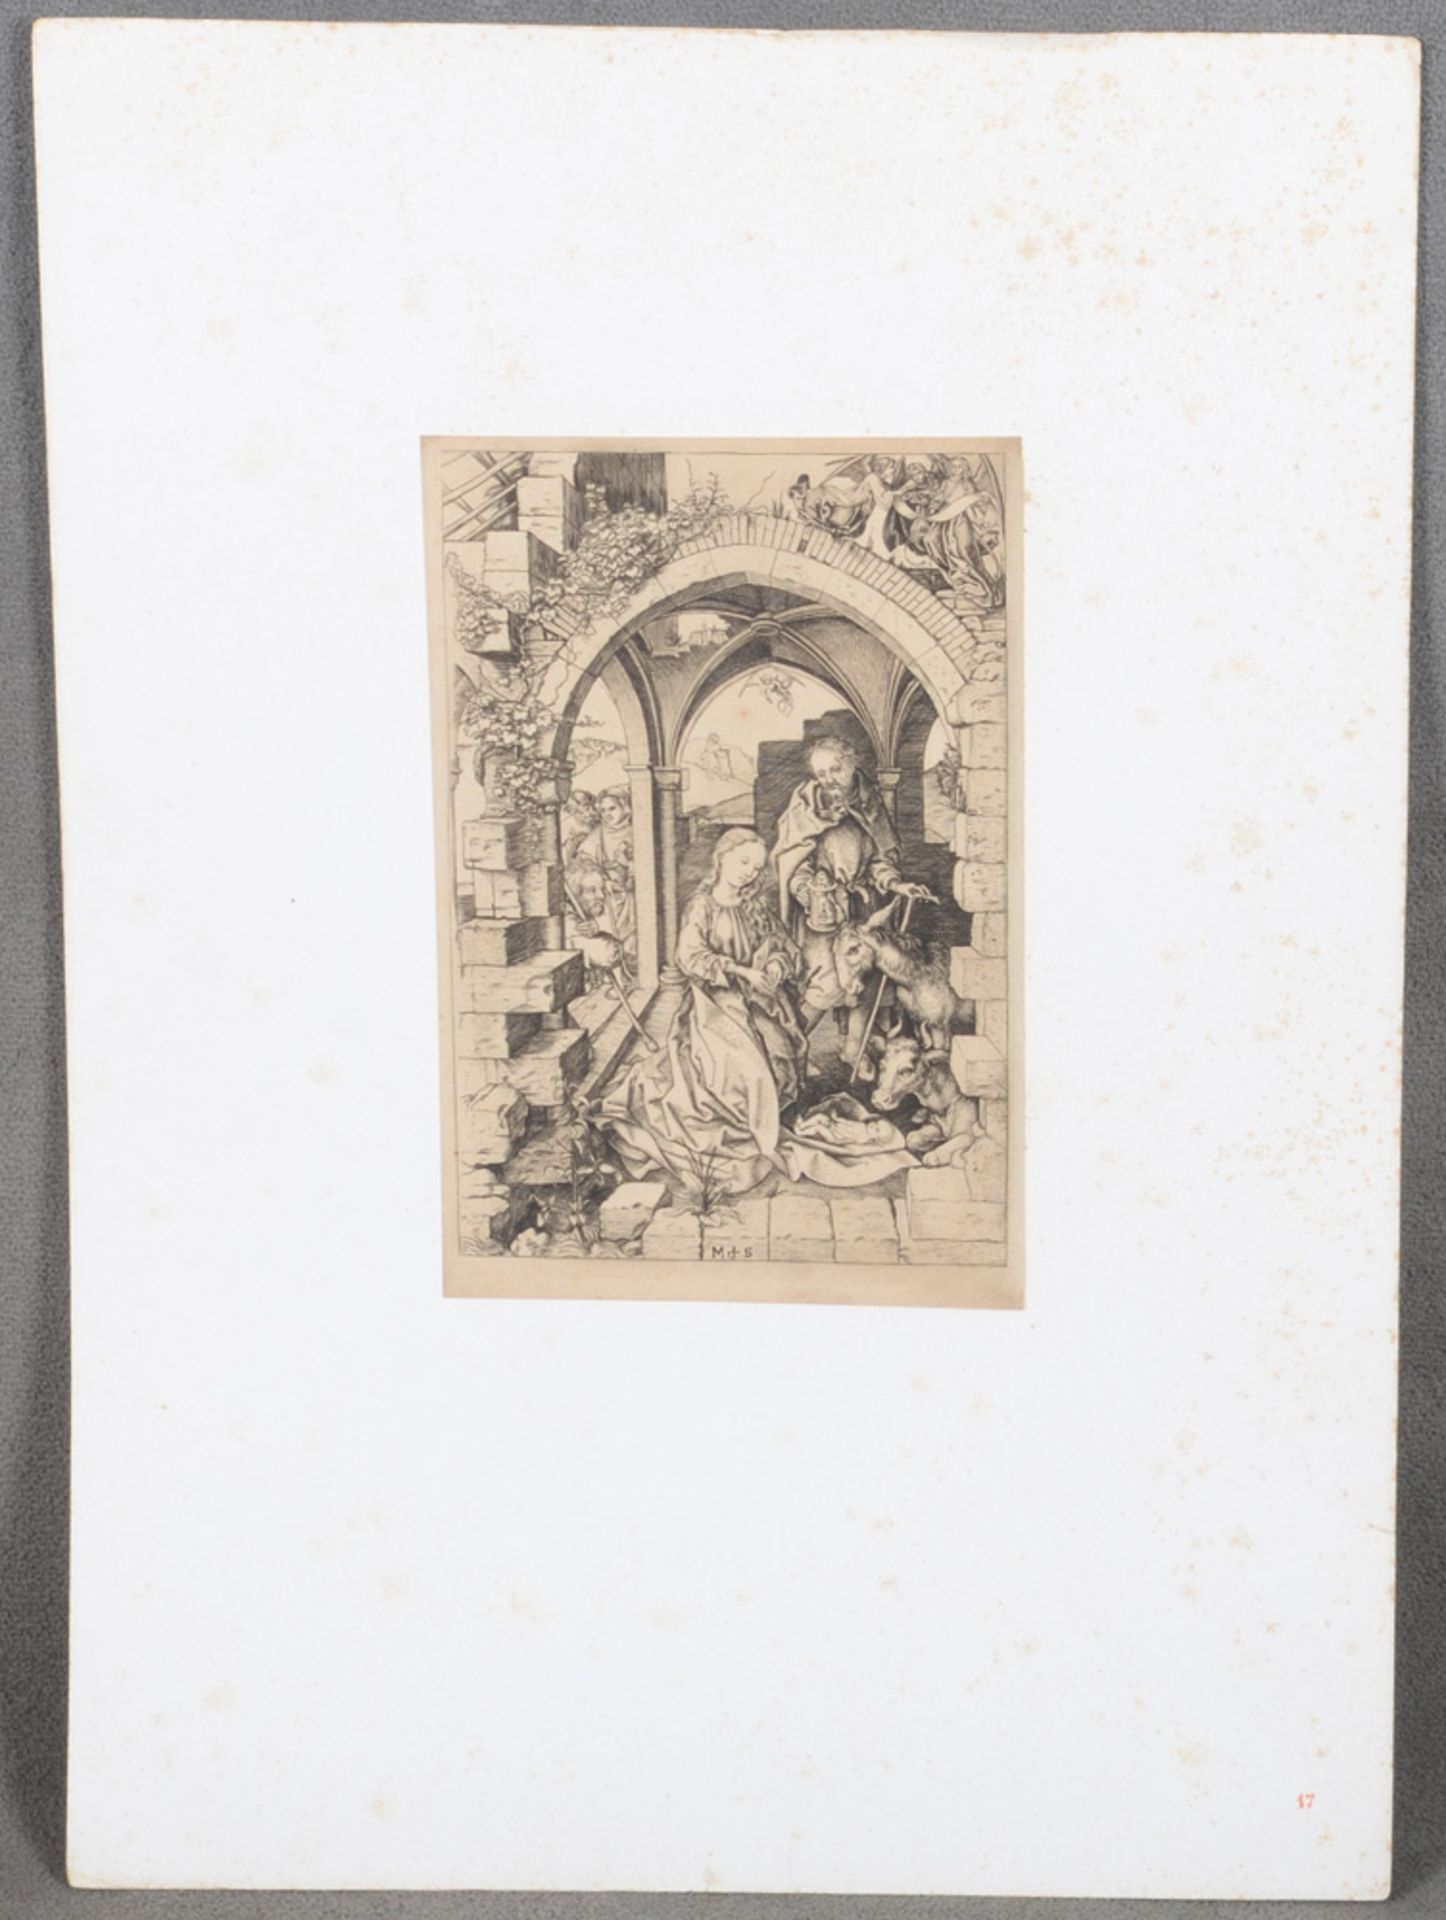 Martin Schongauer (1430/50-1491). Die Geburt Christi. Kupferstich, ungerahmt, 25 x 16,5 cm. (